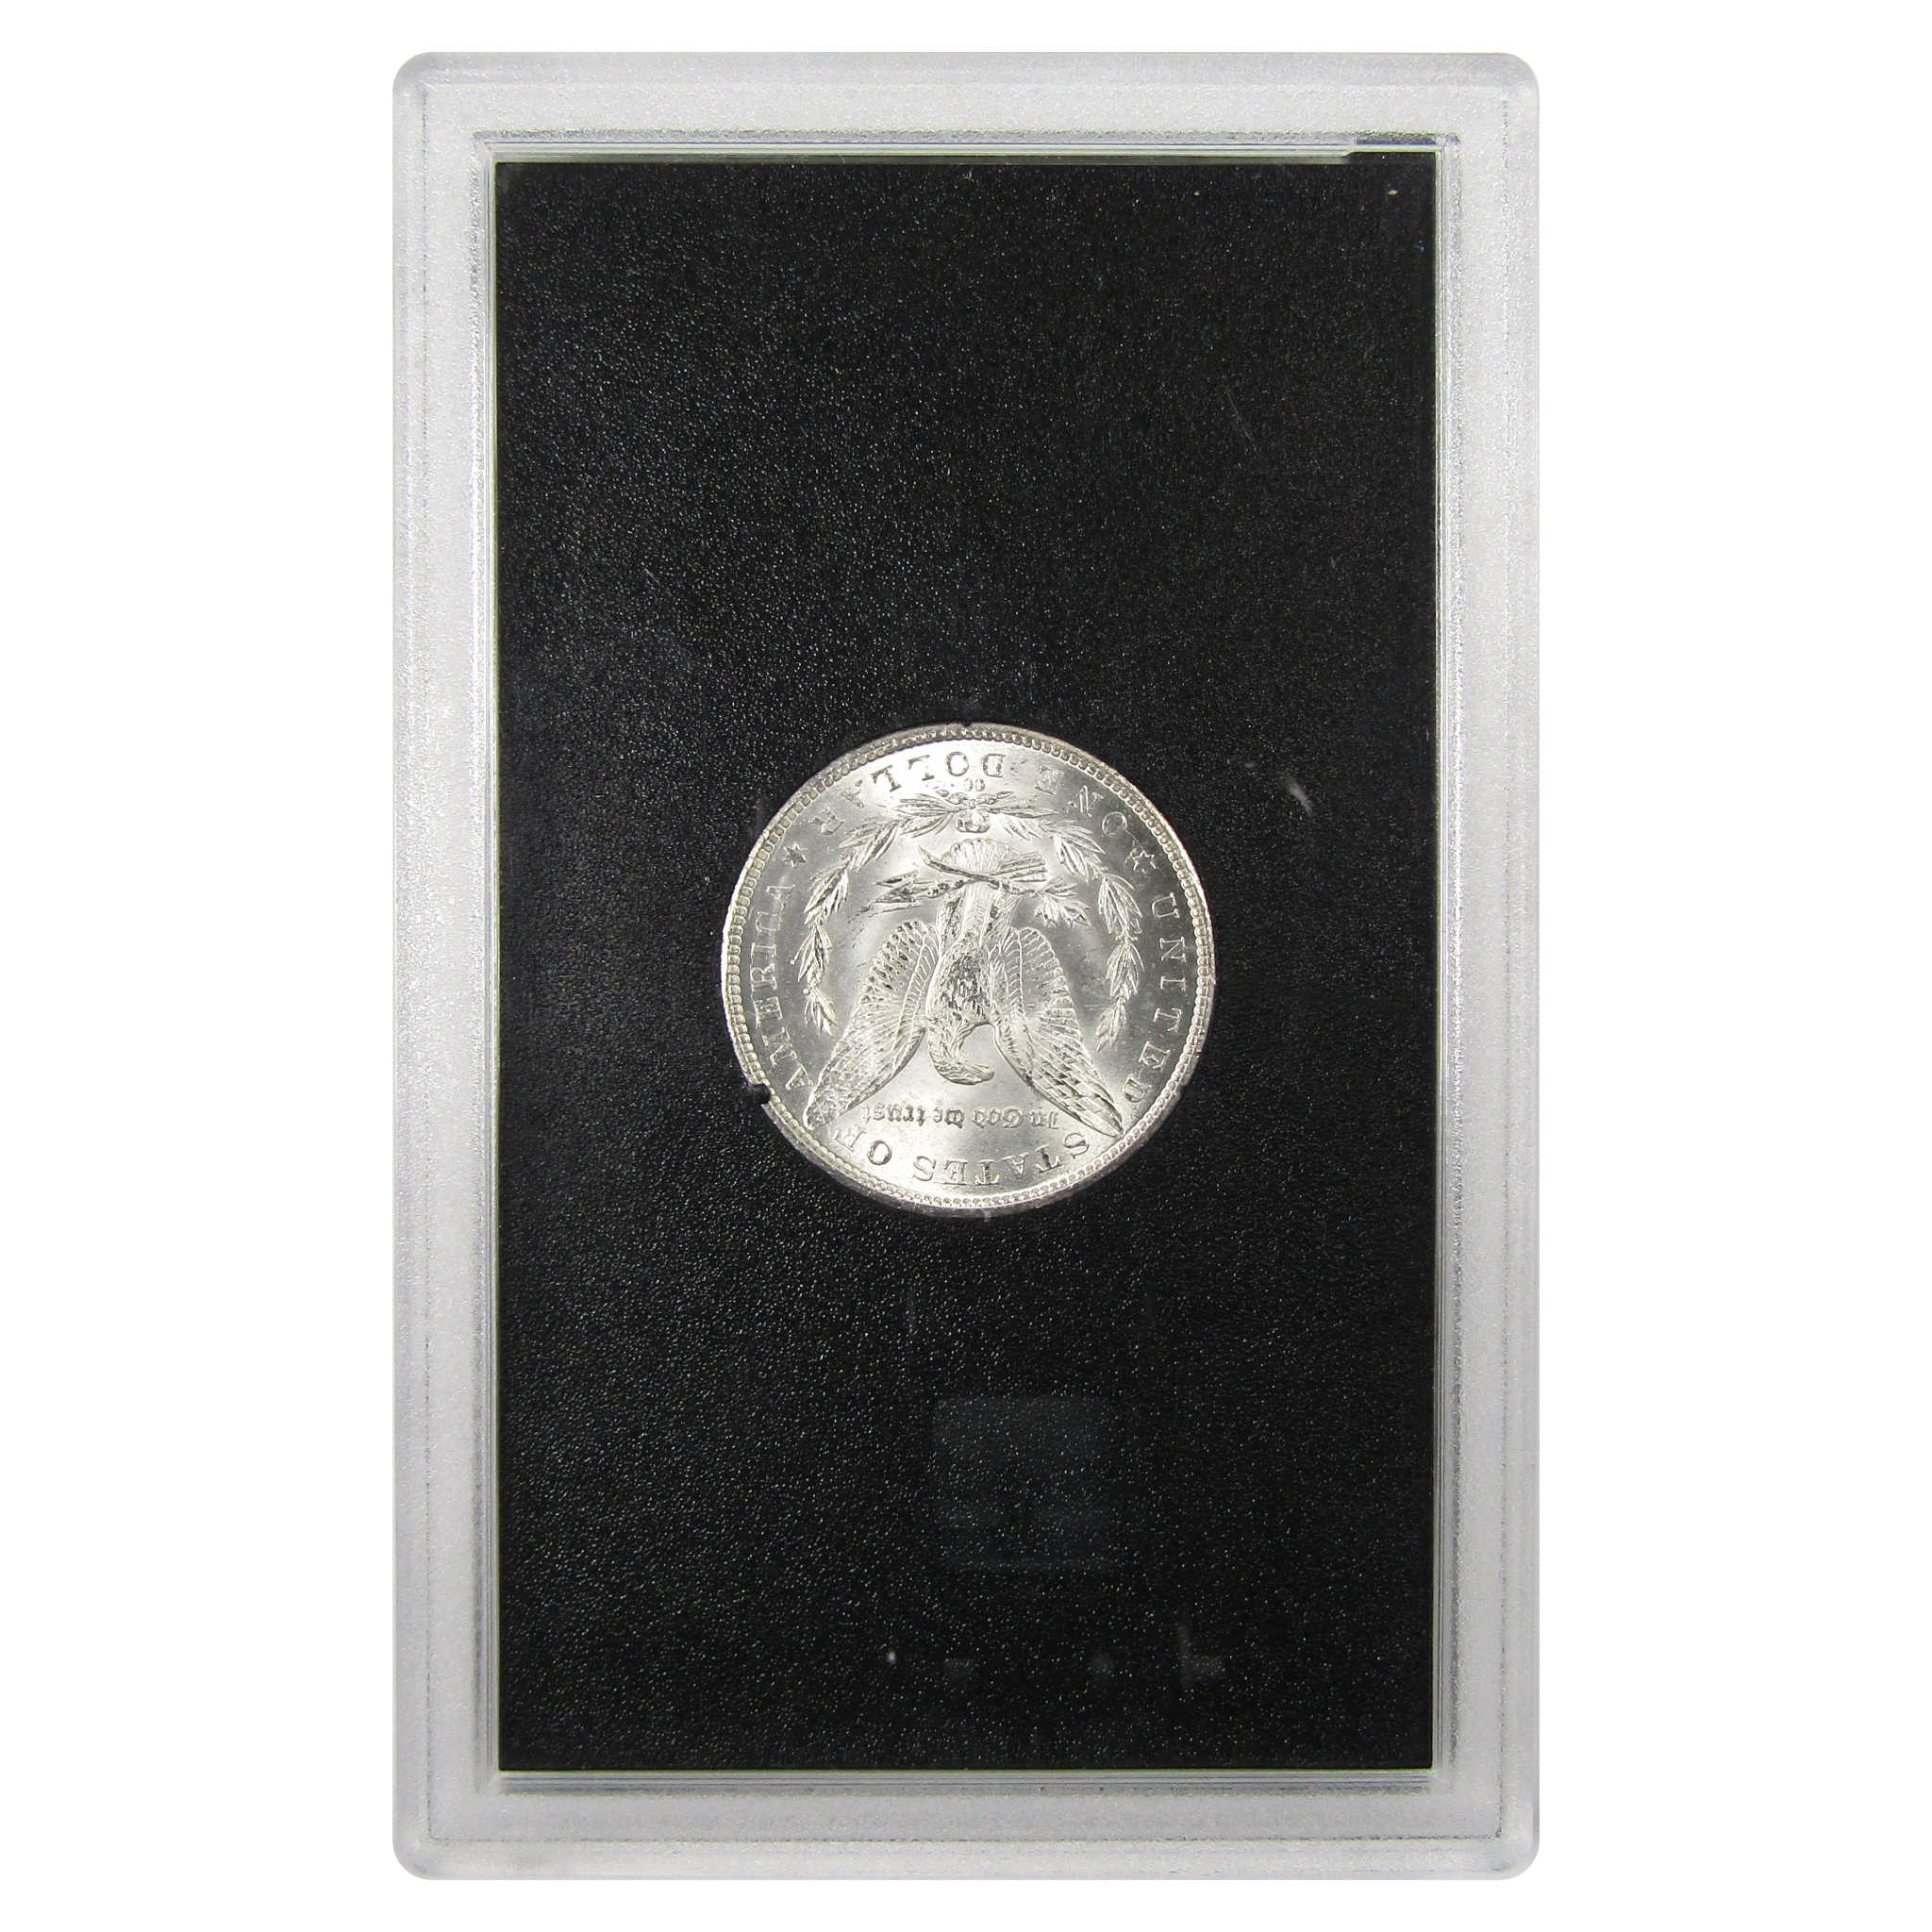 1884 CC GSA Morgan Dollar BU Uncirculated Silver $1 Coin SKU:I9855 - Morgan coin - Morgan silver dollar - Morgan silver dollar for sale - Profile Coins &amp; Collectibles